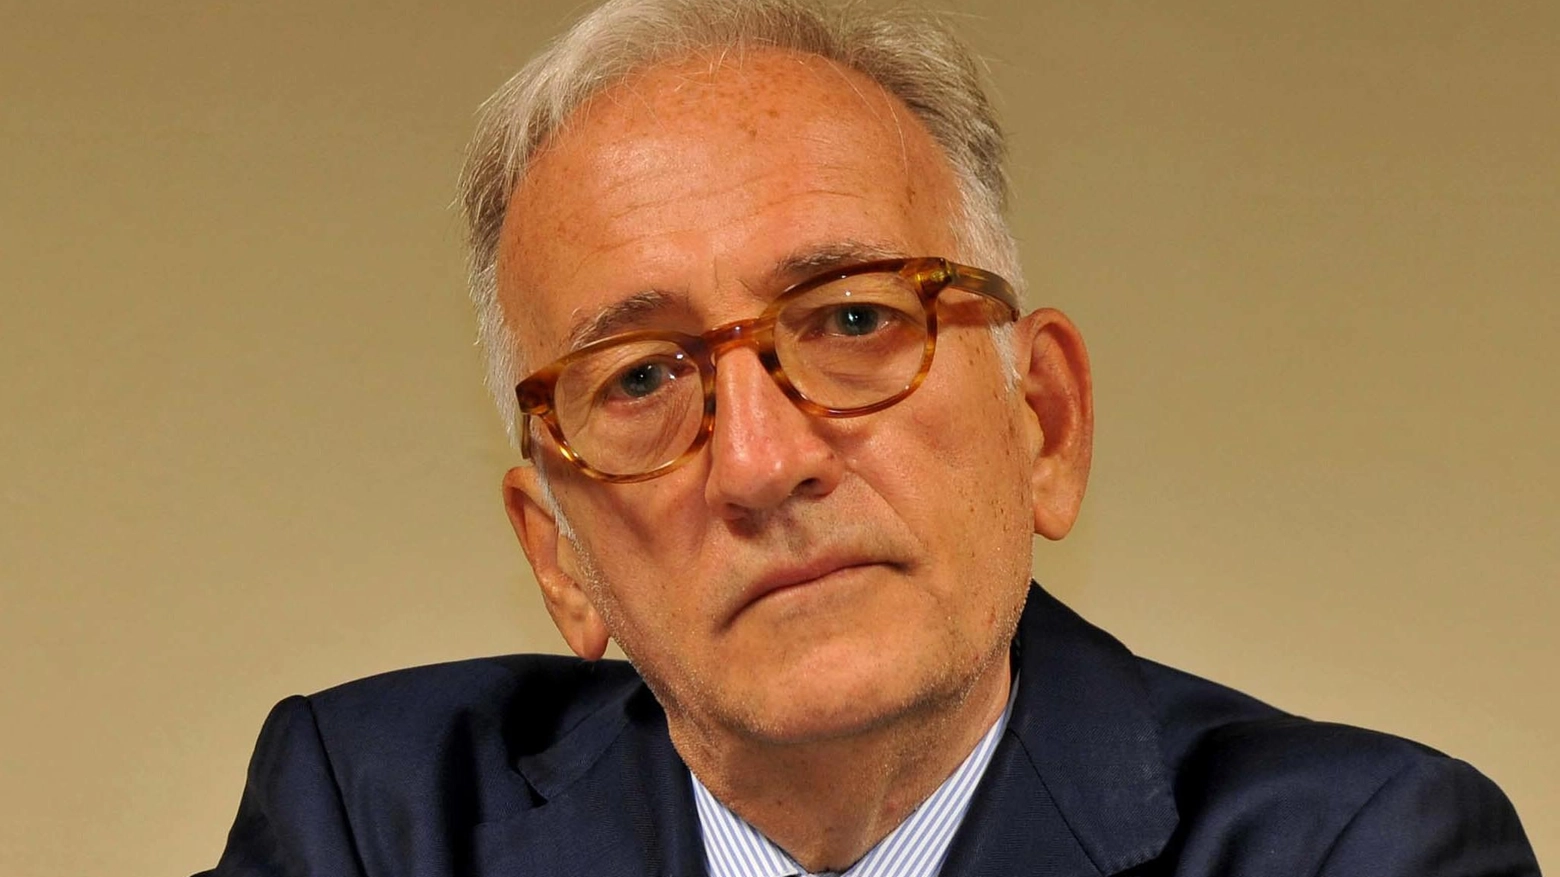 Fondazione Estense  Riccardo Maiarelli   torna alla presidenza  Il vice sarà Capatti